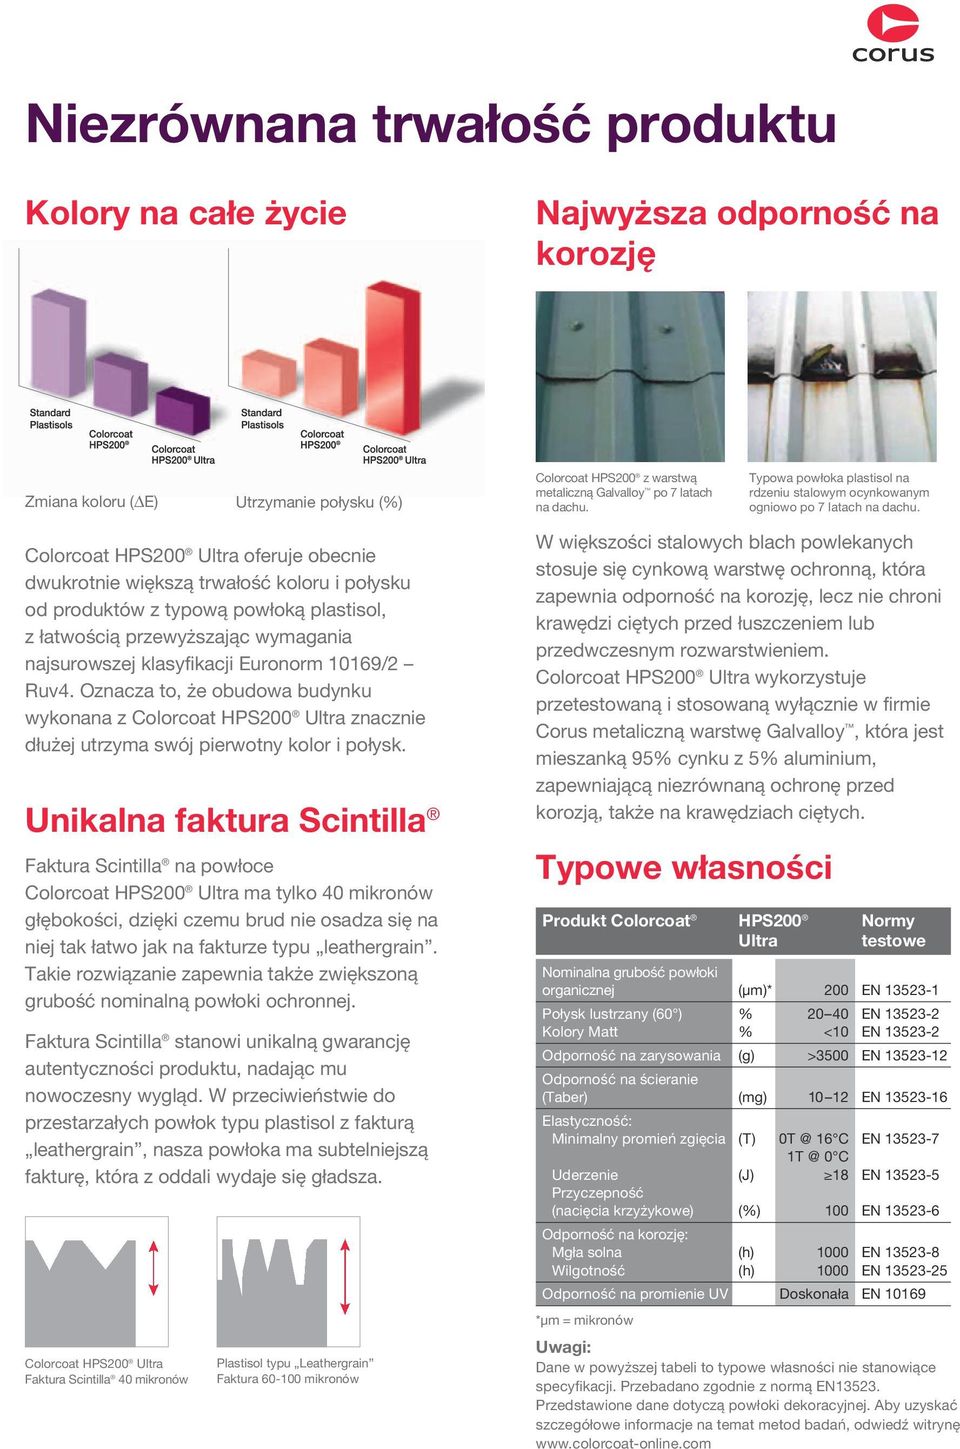 Colorcoat HPS200 Ultra oferuje obecnie dwukrotnie większą trwałość koloru i połysku od produktów z typową powłoką plastisol, z łatwością przewyższając wymagania najsurowszej klasyfikacji Euronorm